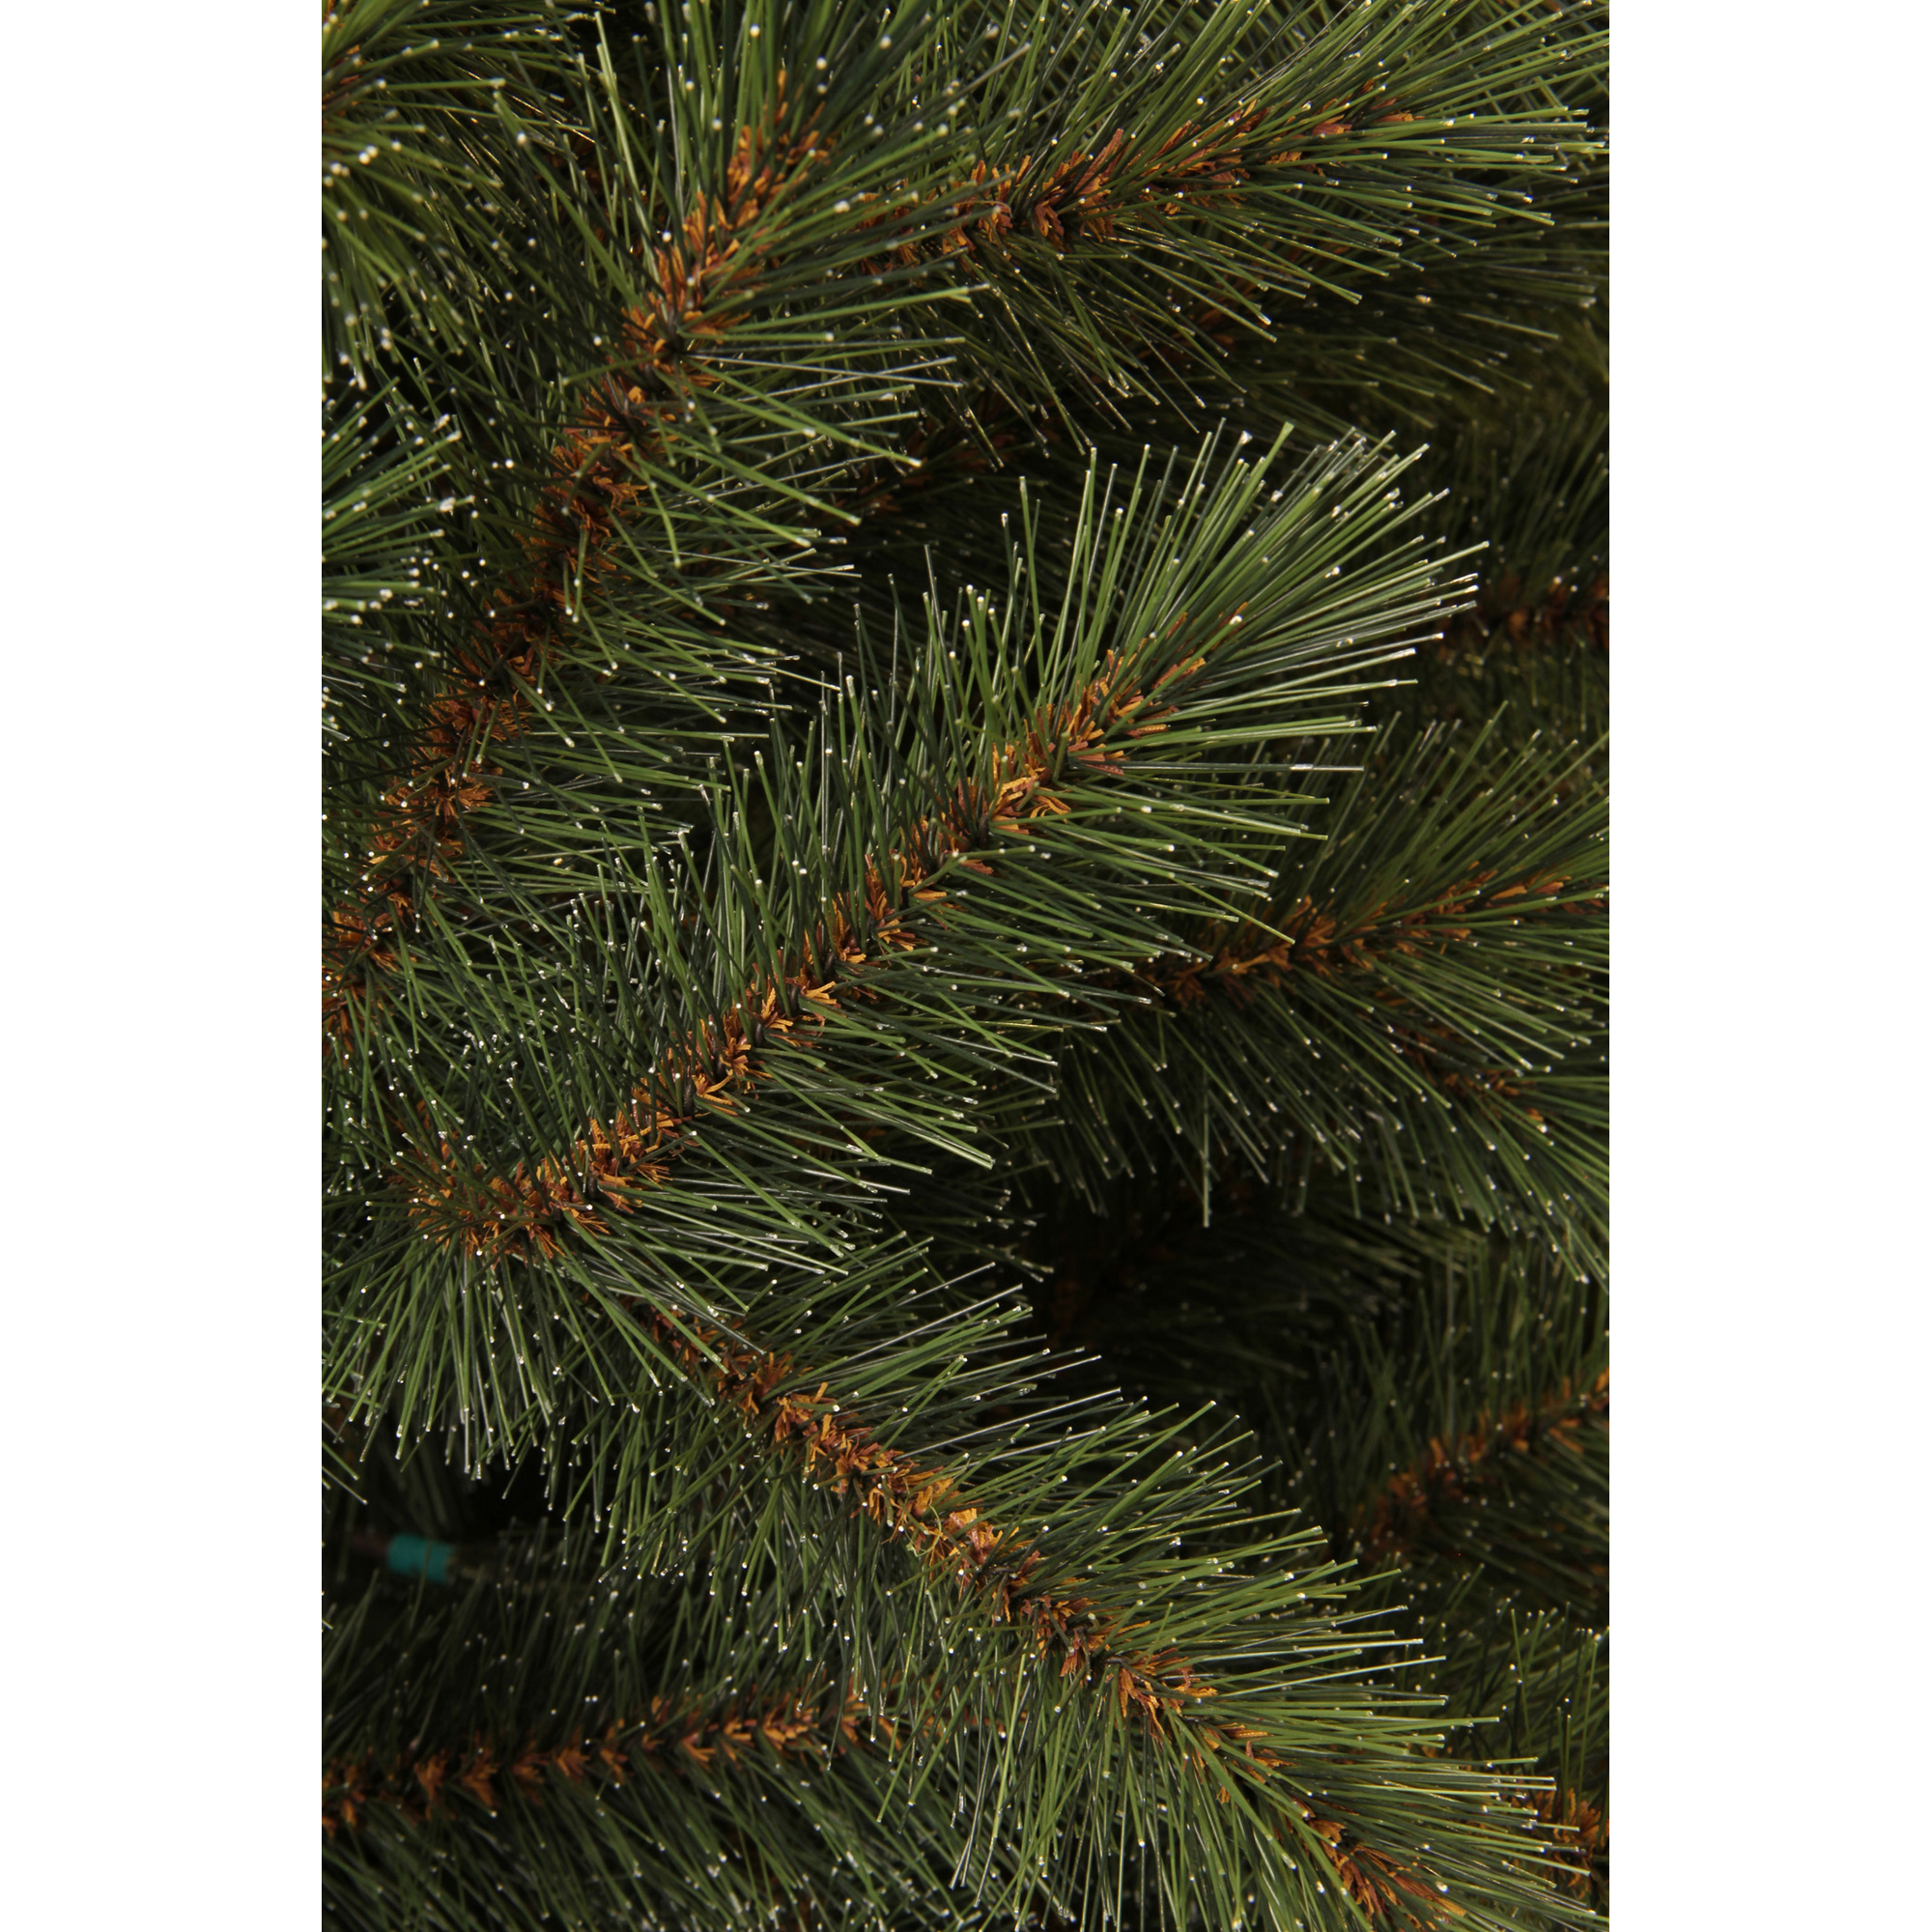 Künstlicher Weihnachtsbaum 'Vail' grün 155 cm + product picture